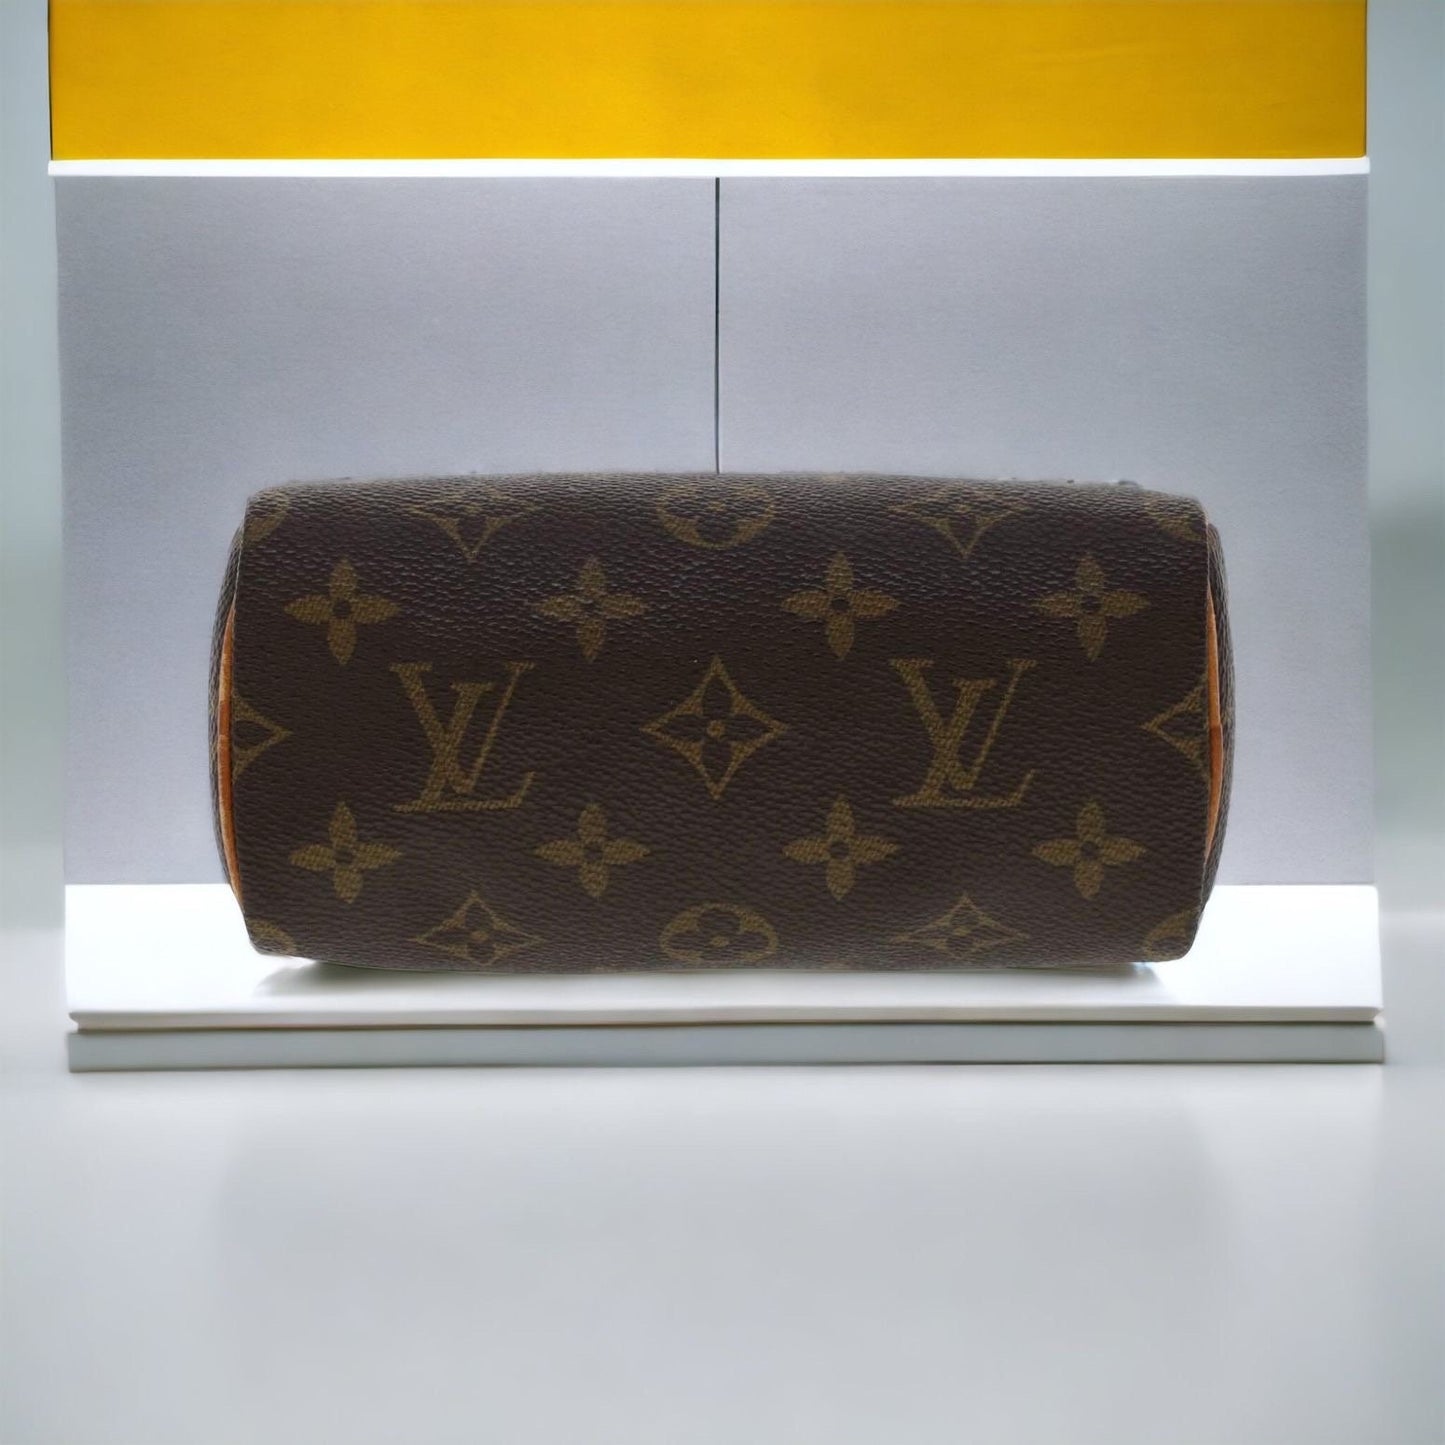 LOUIS VUITTON Mini Speedy Monogram Handbag